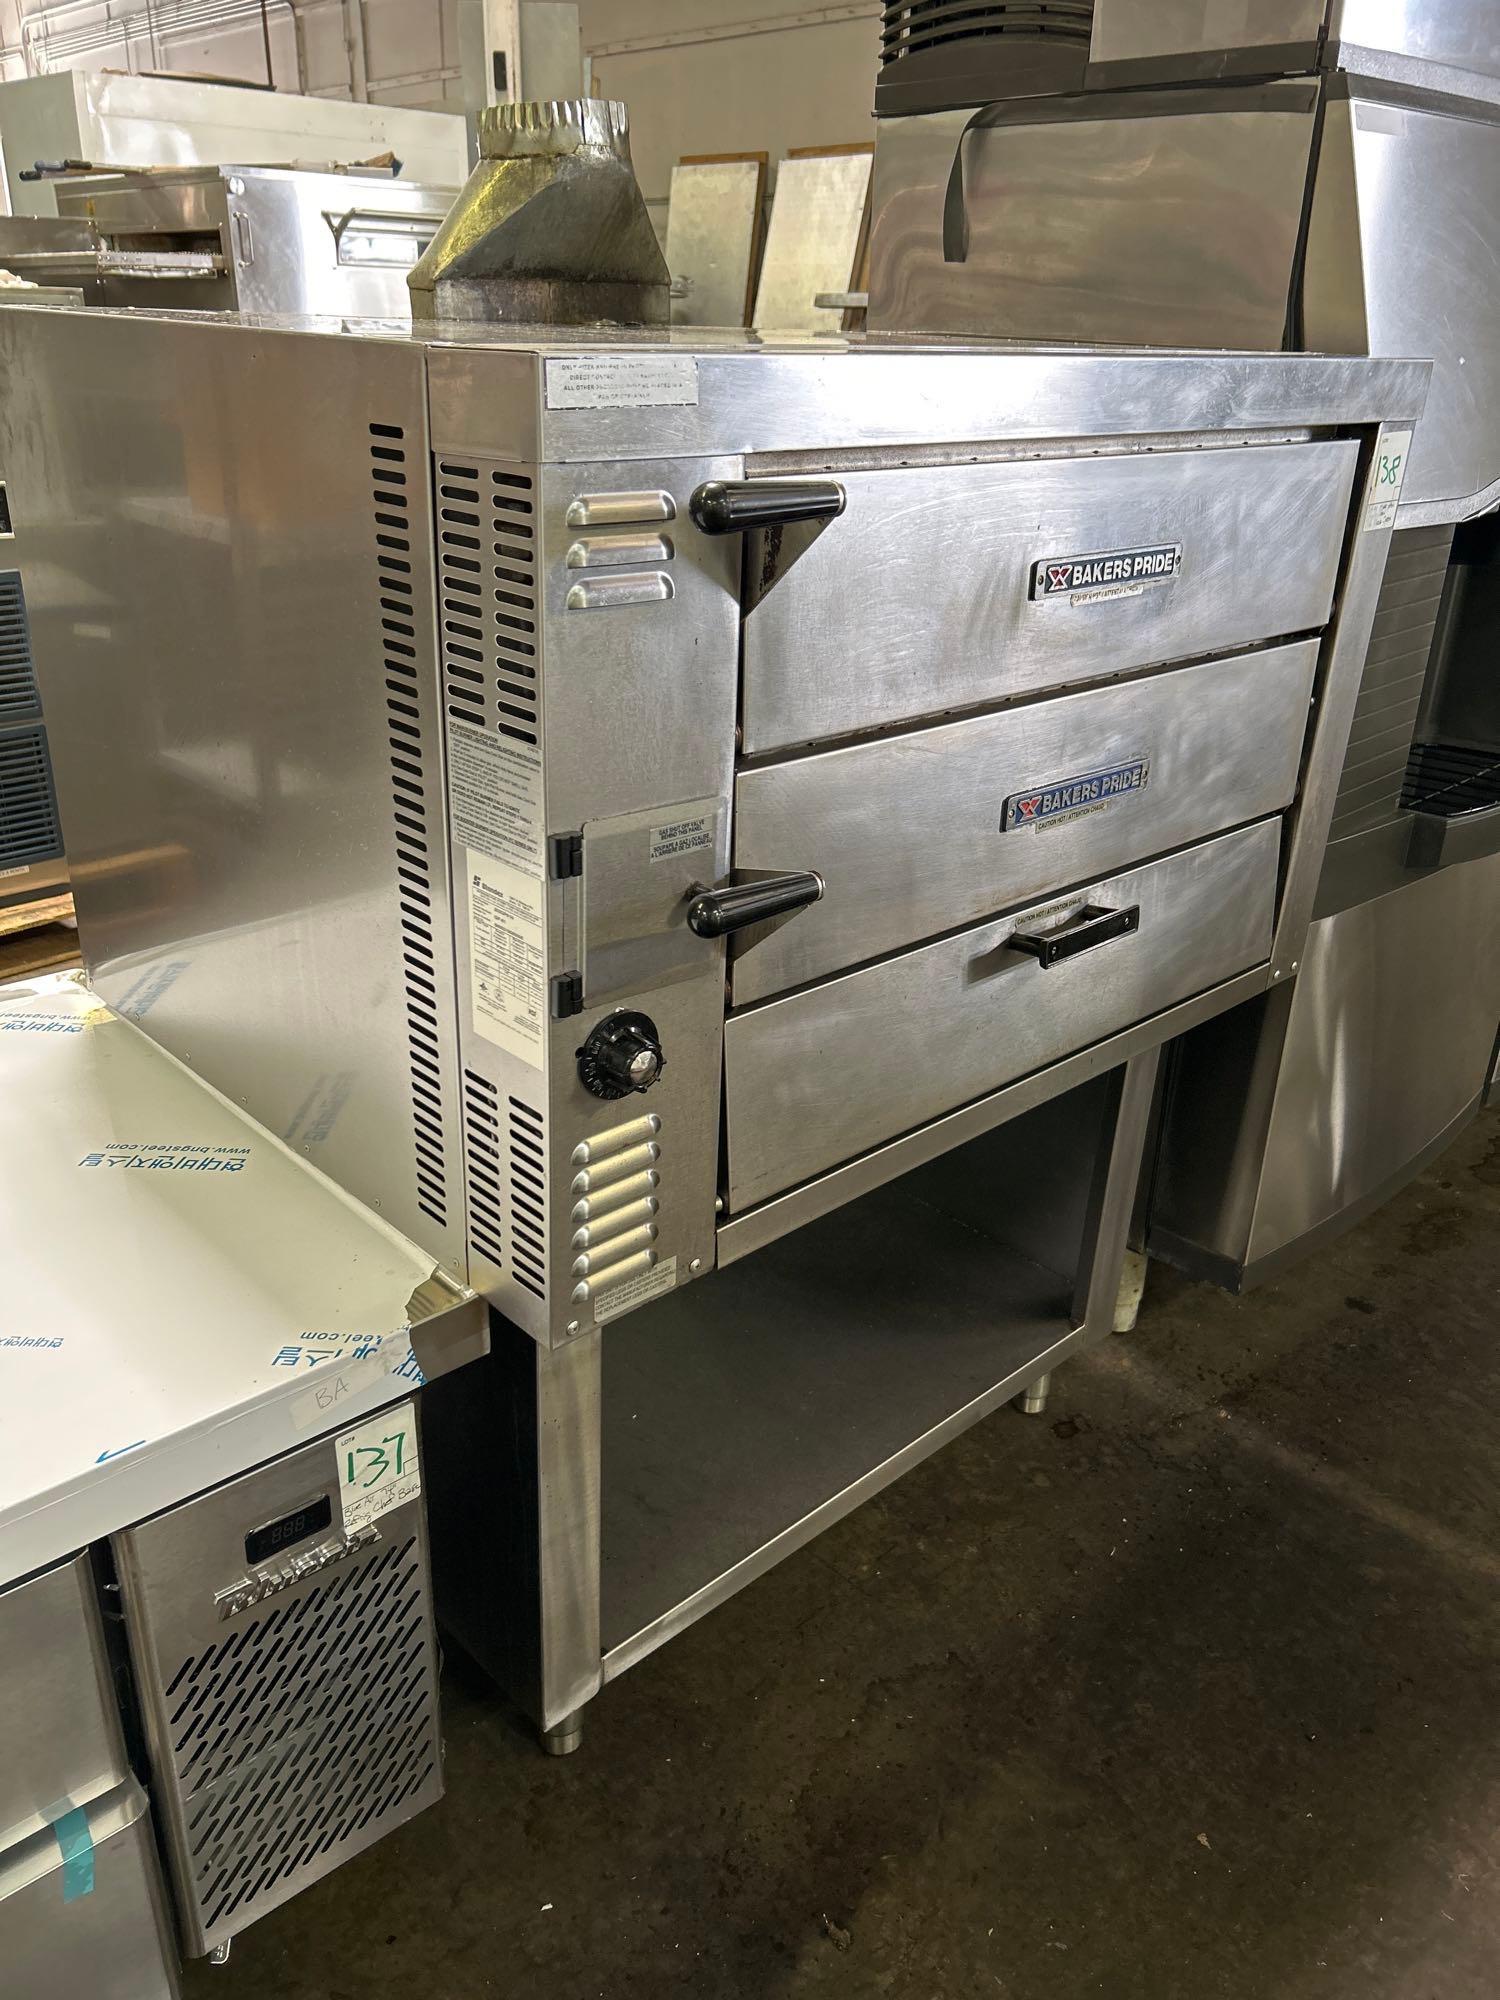 Bakers Pride Mdl. GP61 Two Door Countertop Gas Pizza Oven